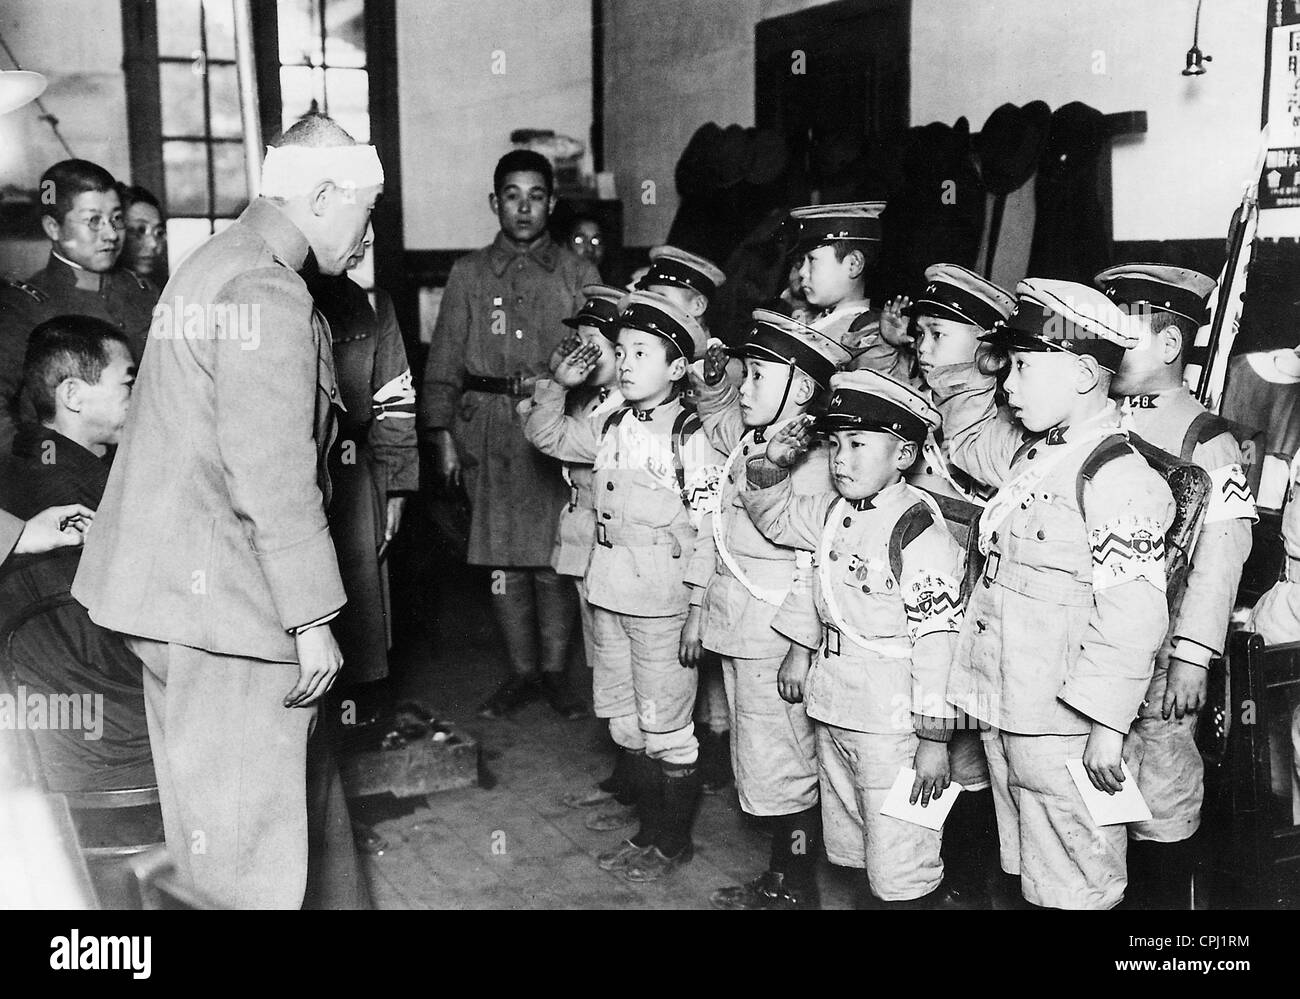 Les enfants japonais en uniforme militaire, 1933 Banque D'Images